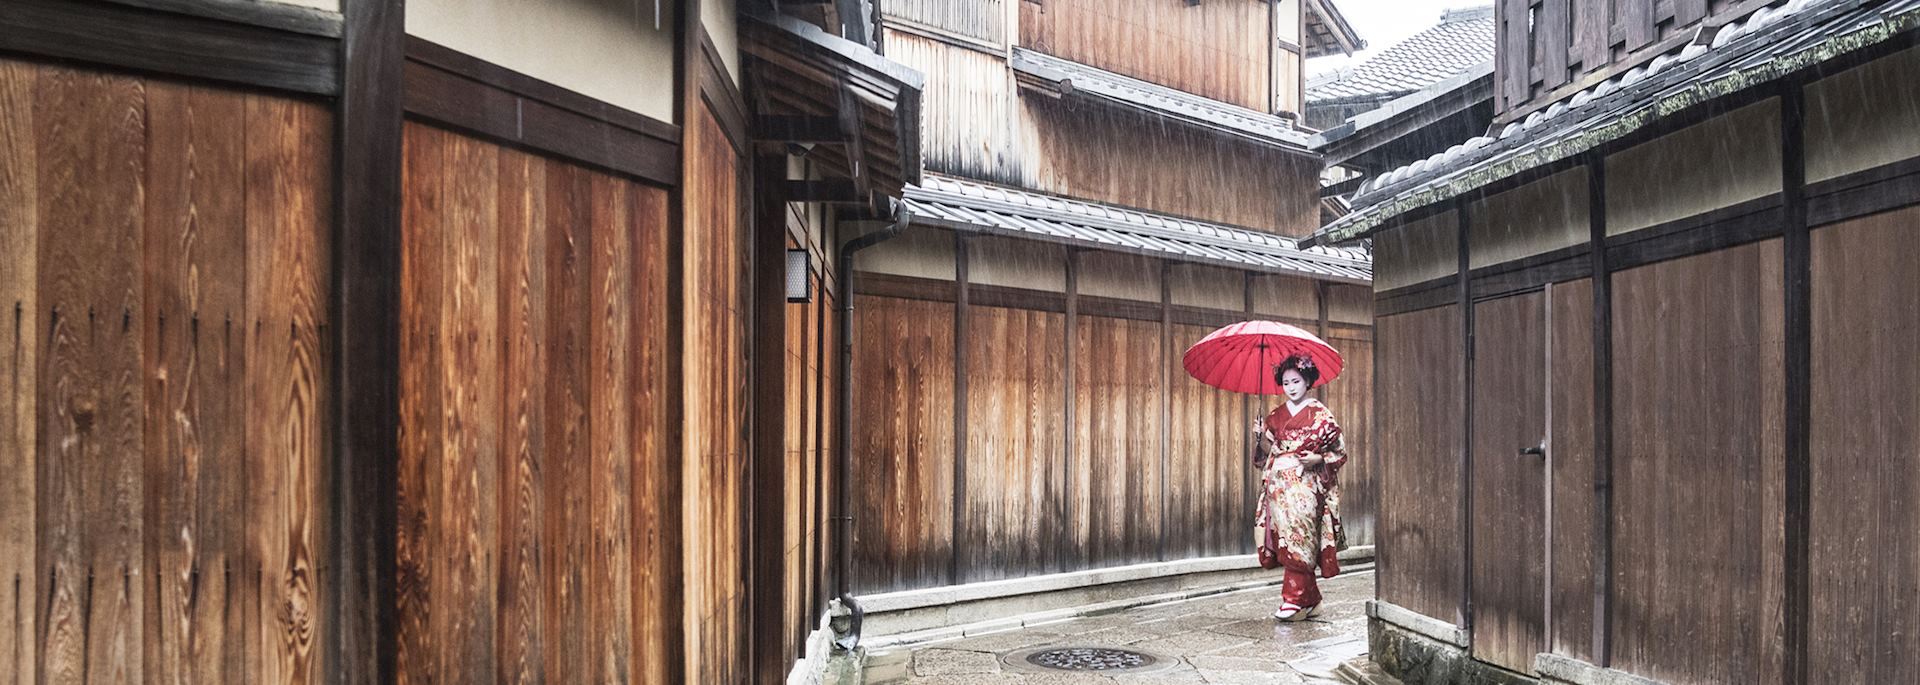 Geisha walking through a Japanese village